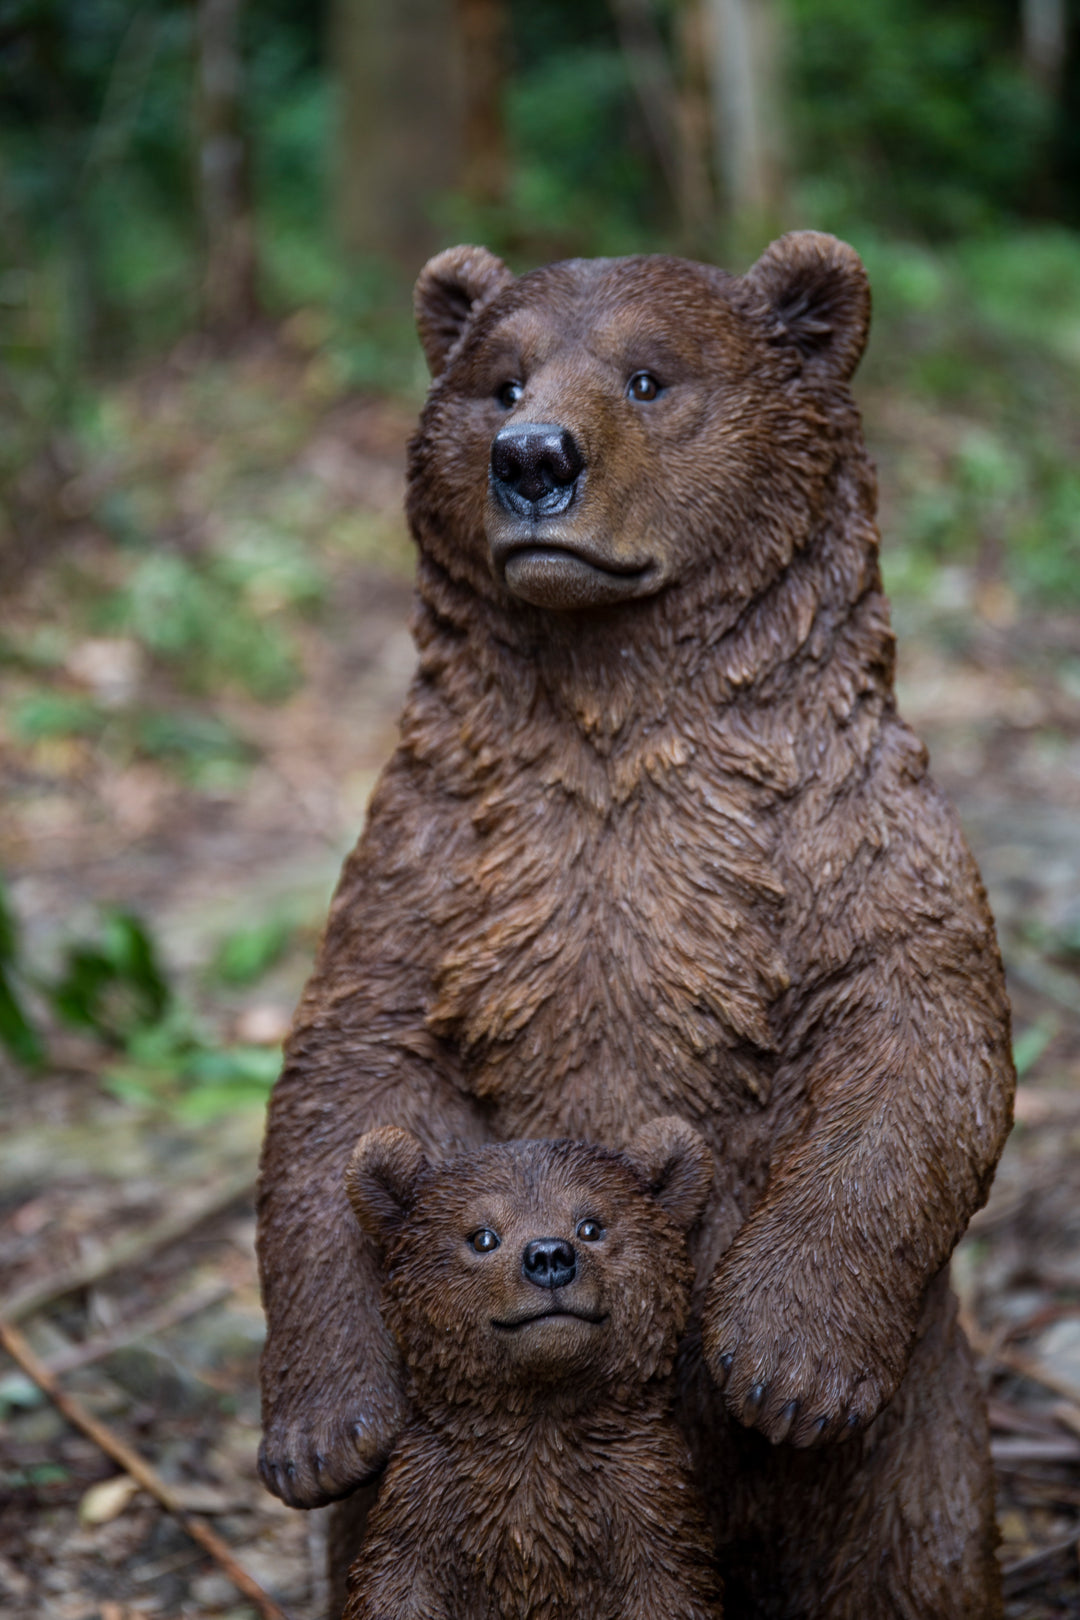 Standing Mother & Baby Brown Bears HI-LINE GIFT LTD.